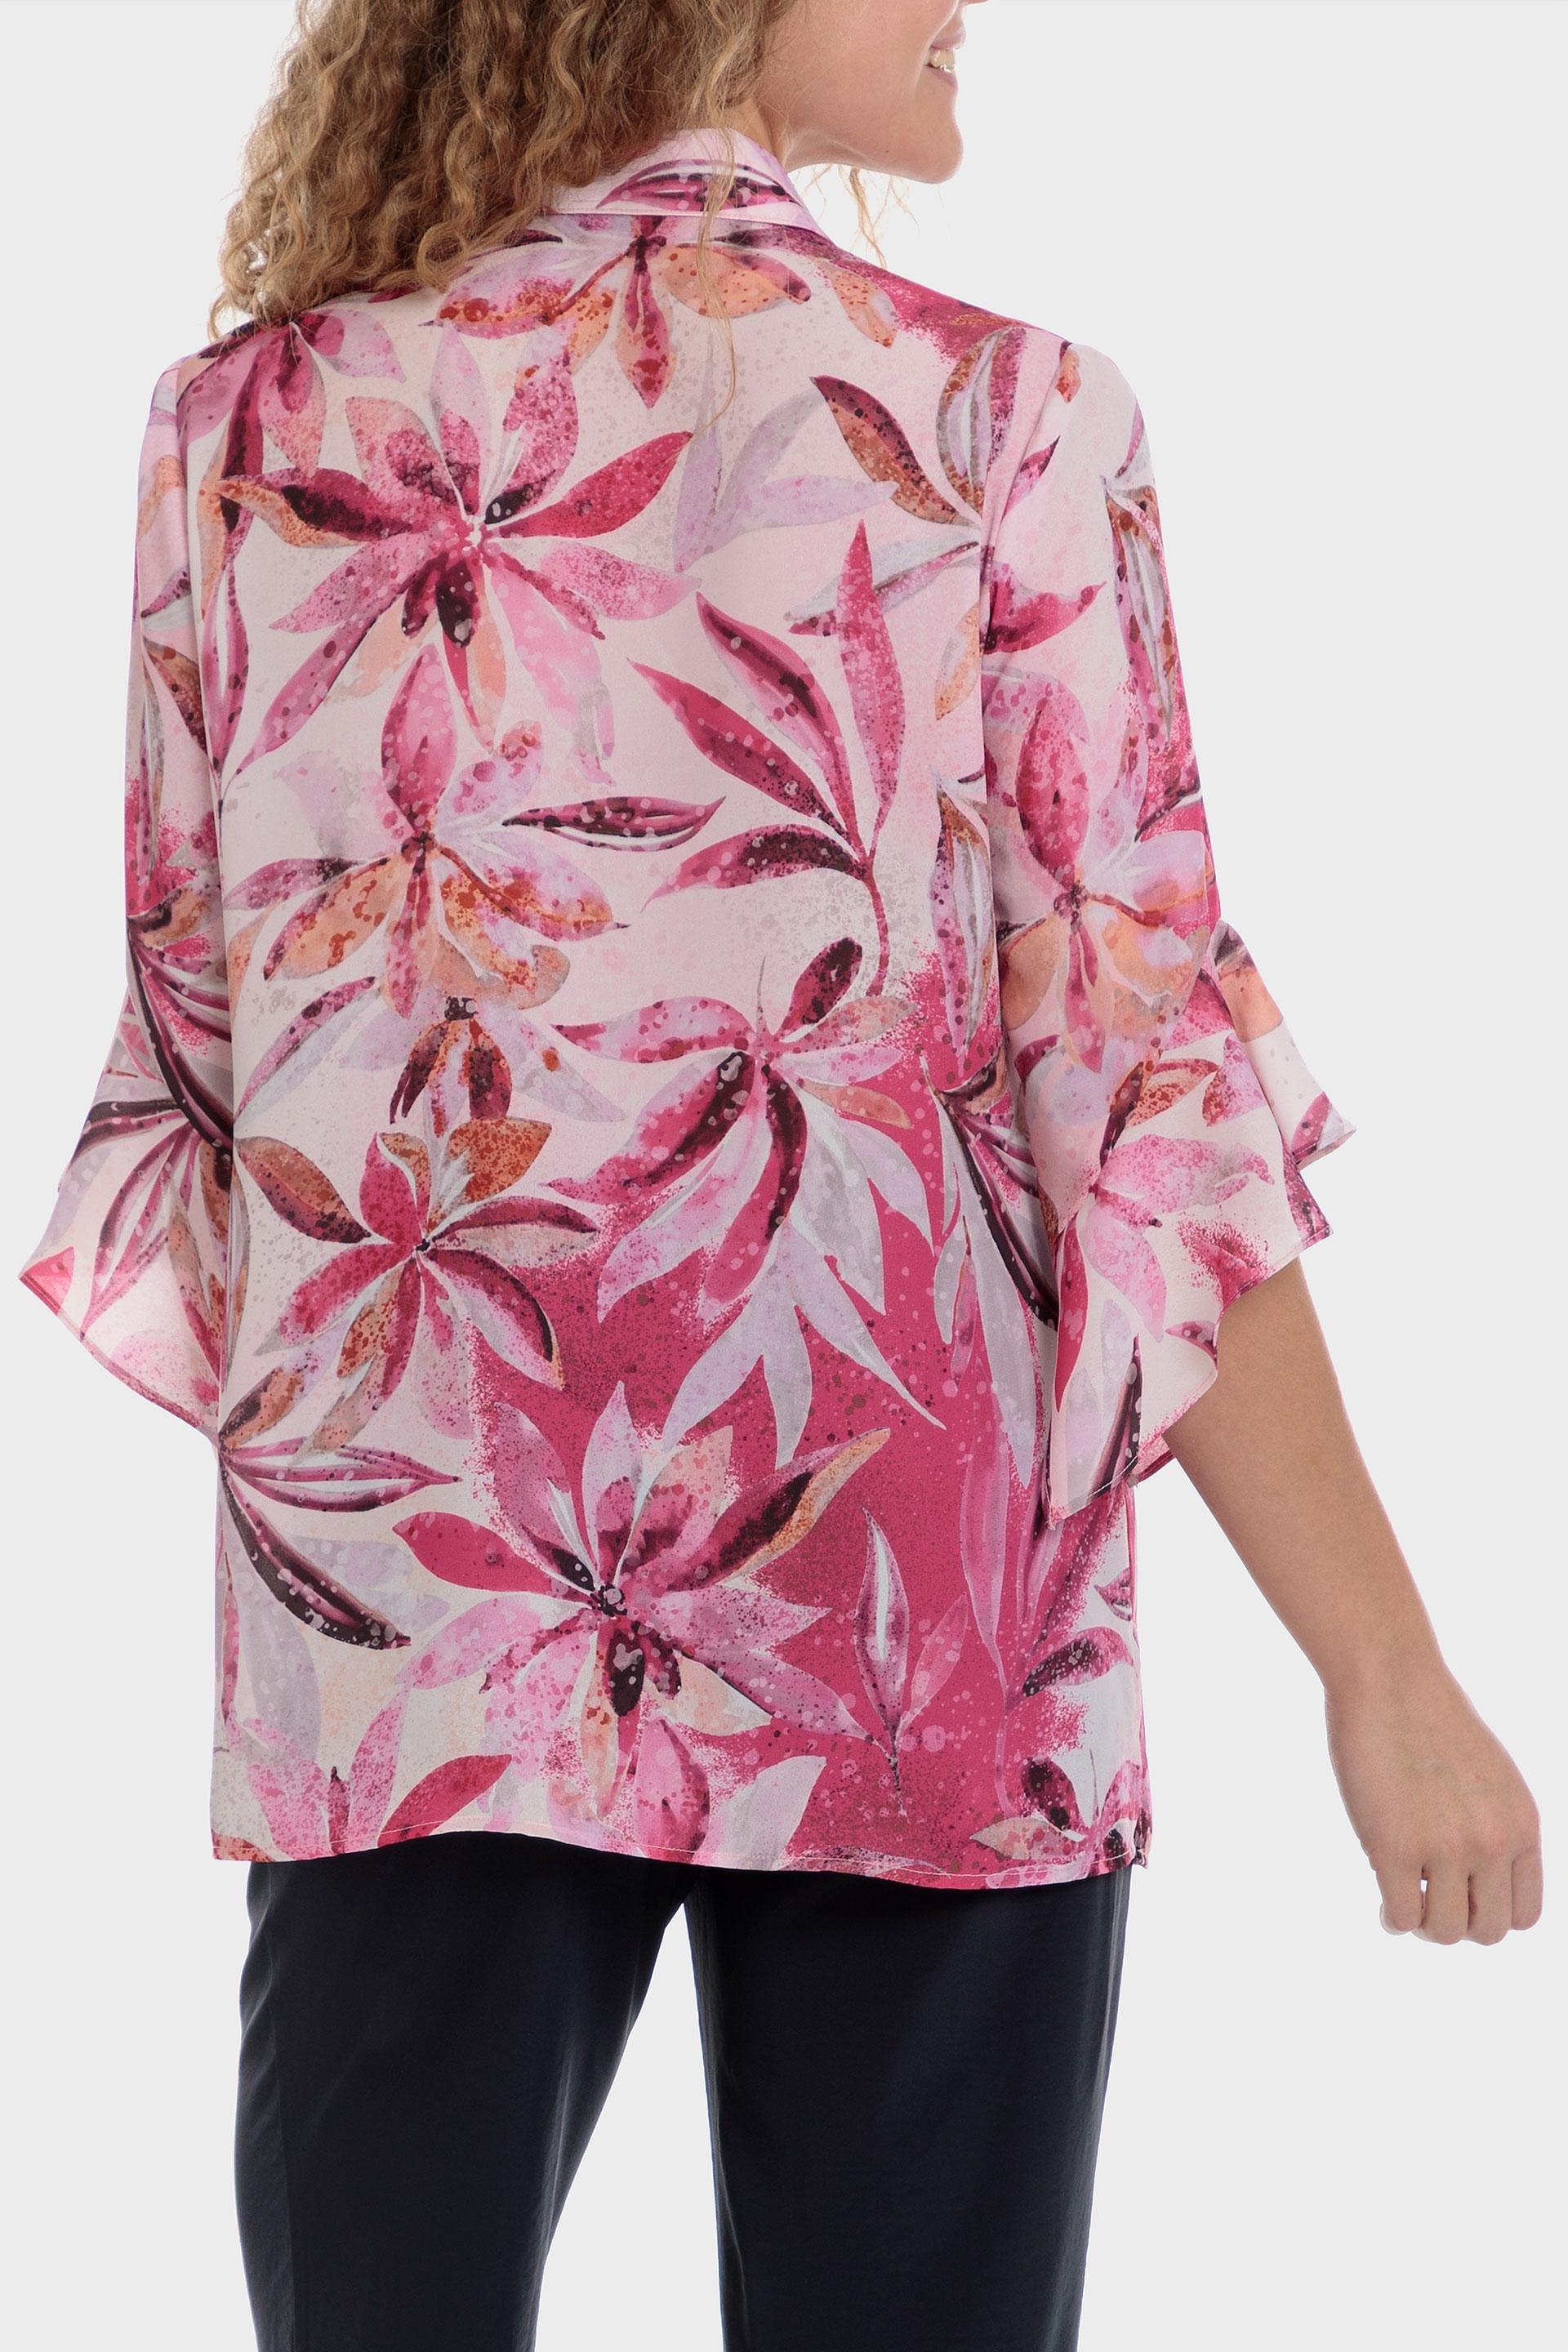 Punt Roma - Multicolour Floral Print Shirt